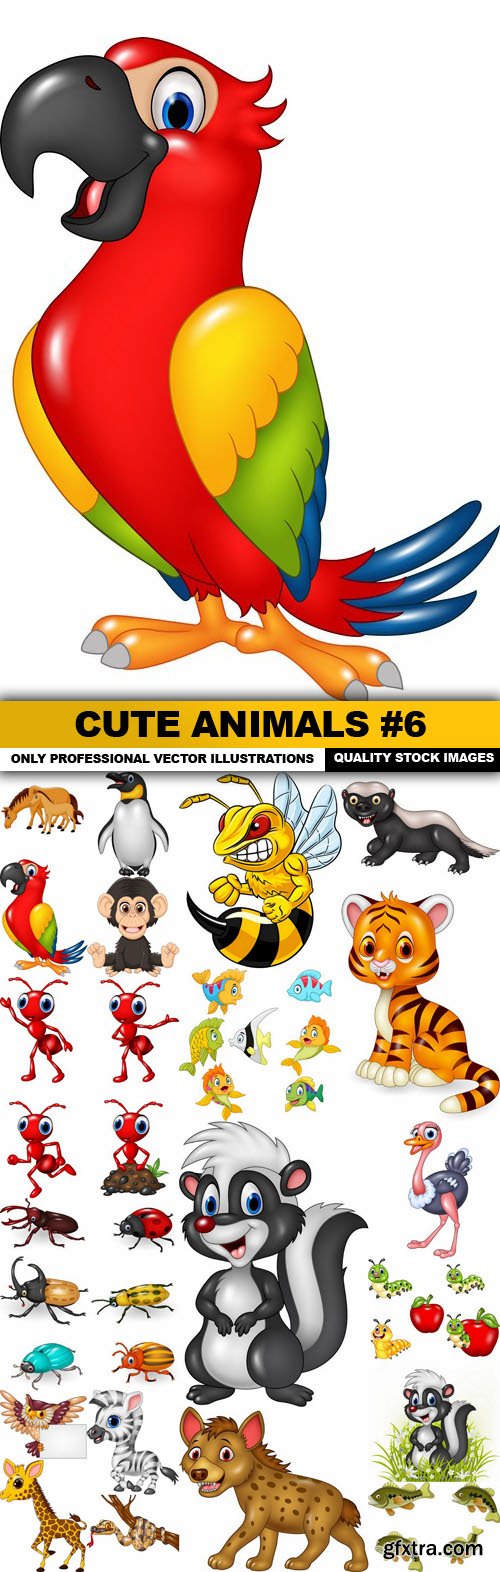 Cute Animals #6 - 20 Vector